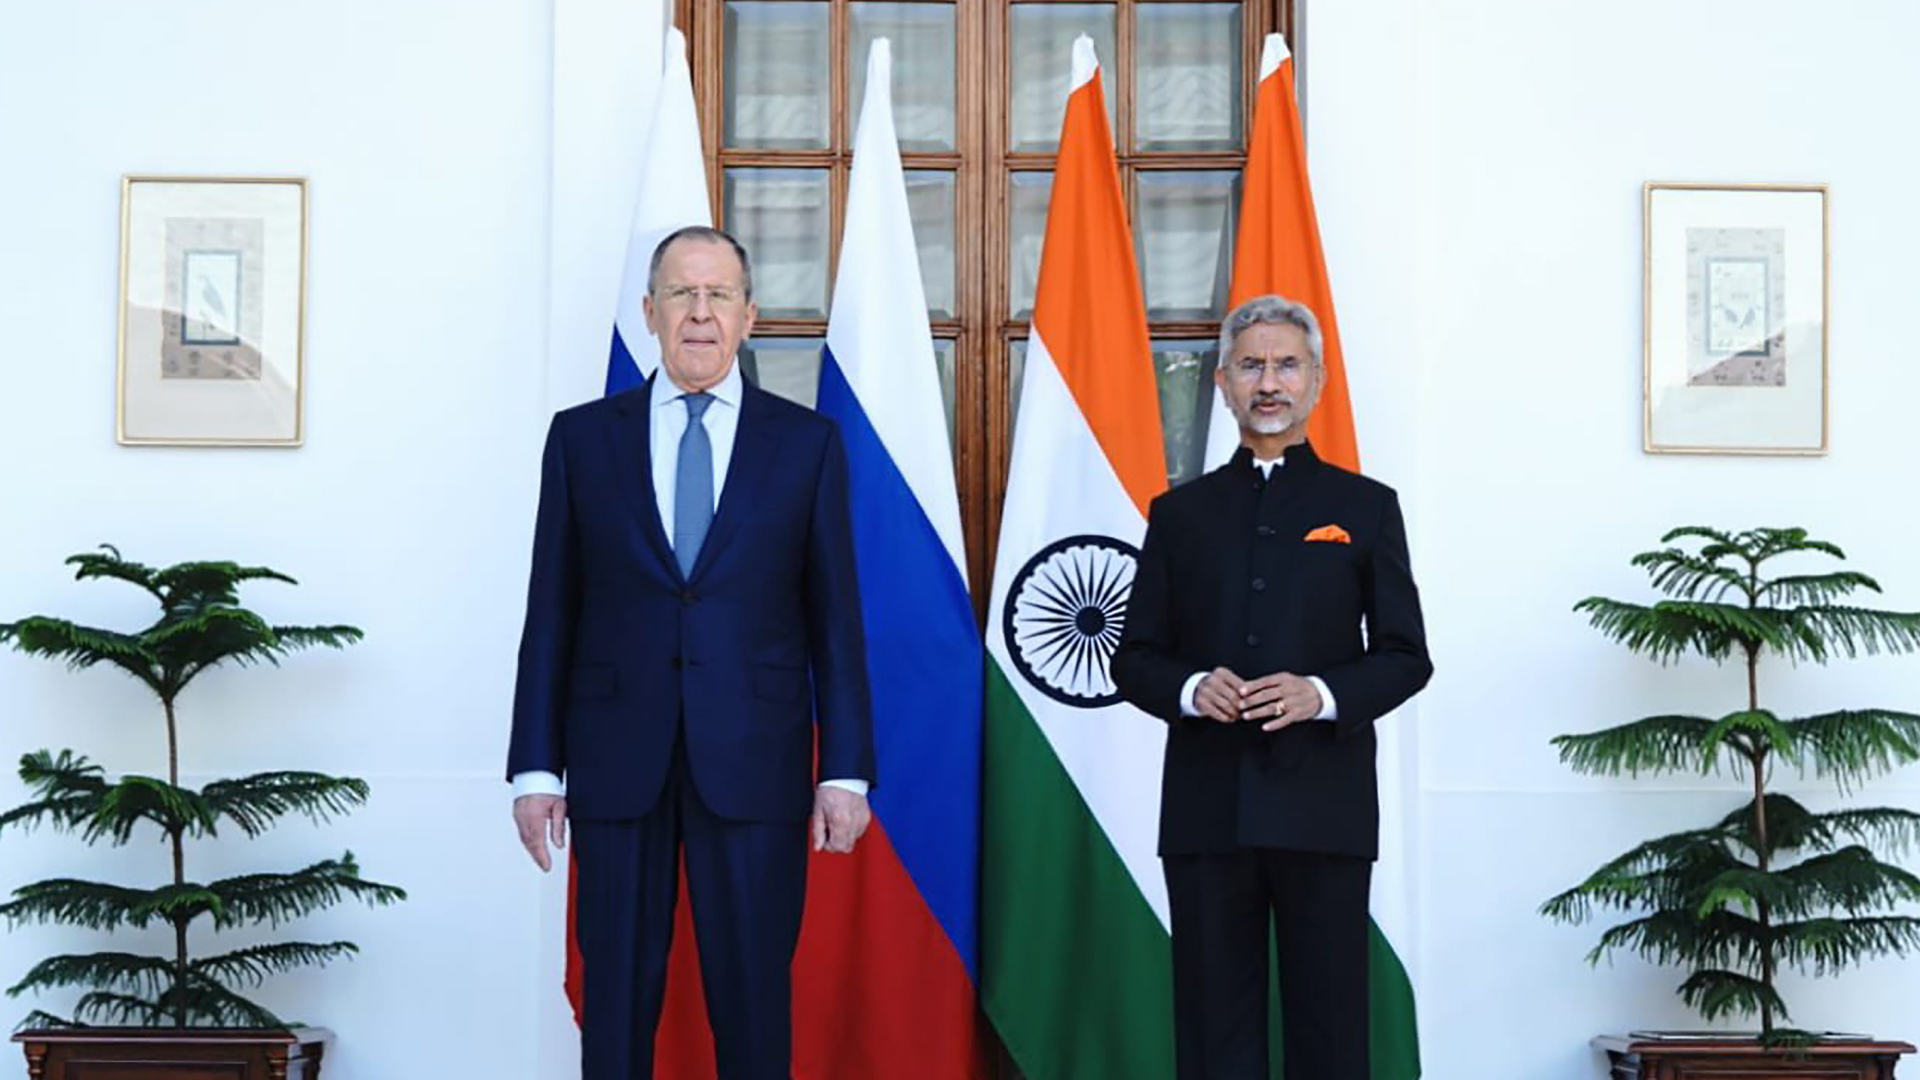 Der russische Außenminister Lawrow in Neu-Delhi mit seinem Amtskollegen Jaishanker